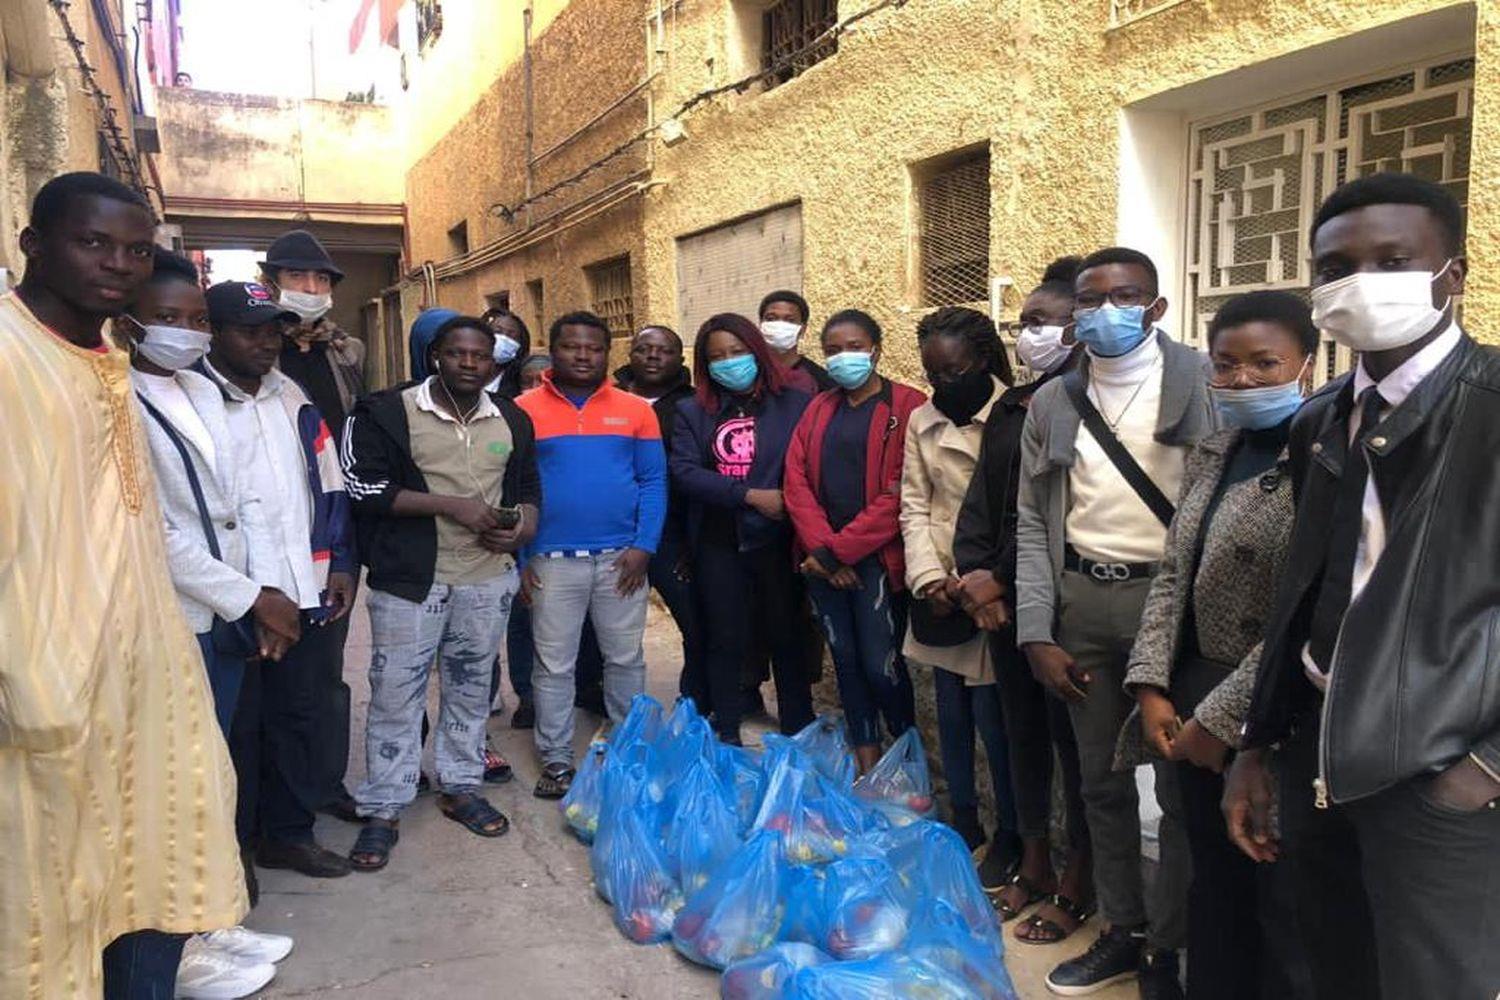 Eine Gruppe von Migranten erhält Lebensmittelpakete.